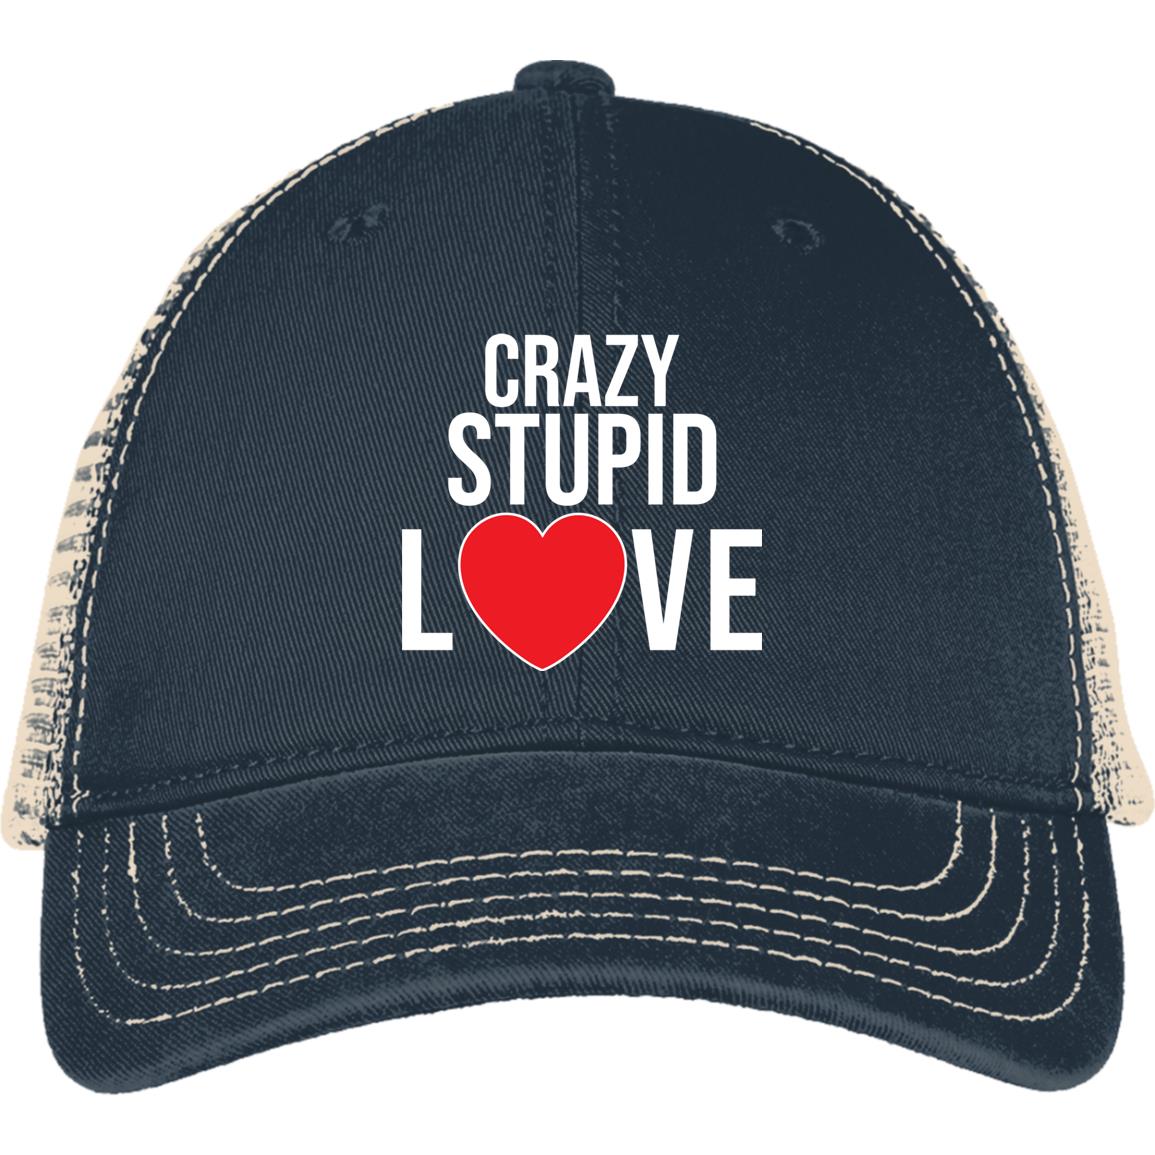 Crazy, Stupid Love Mesh Back Cap